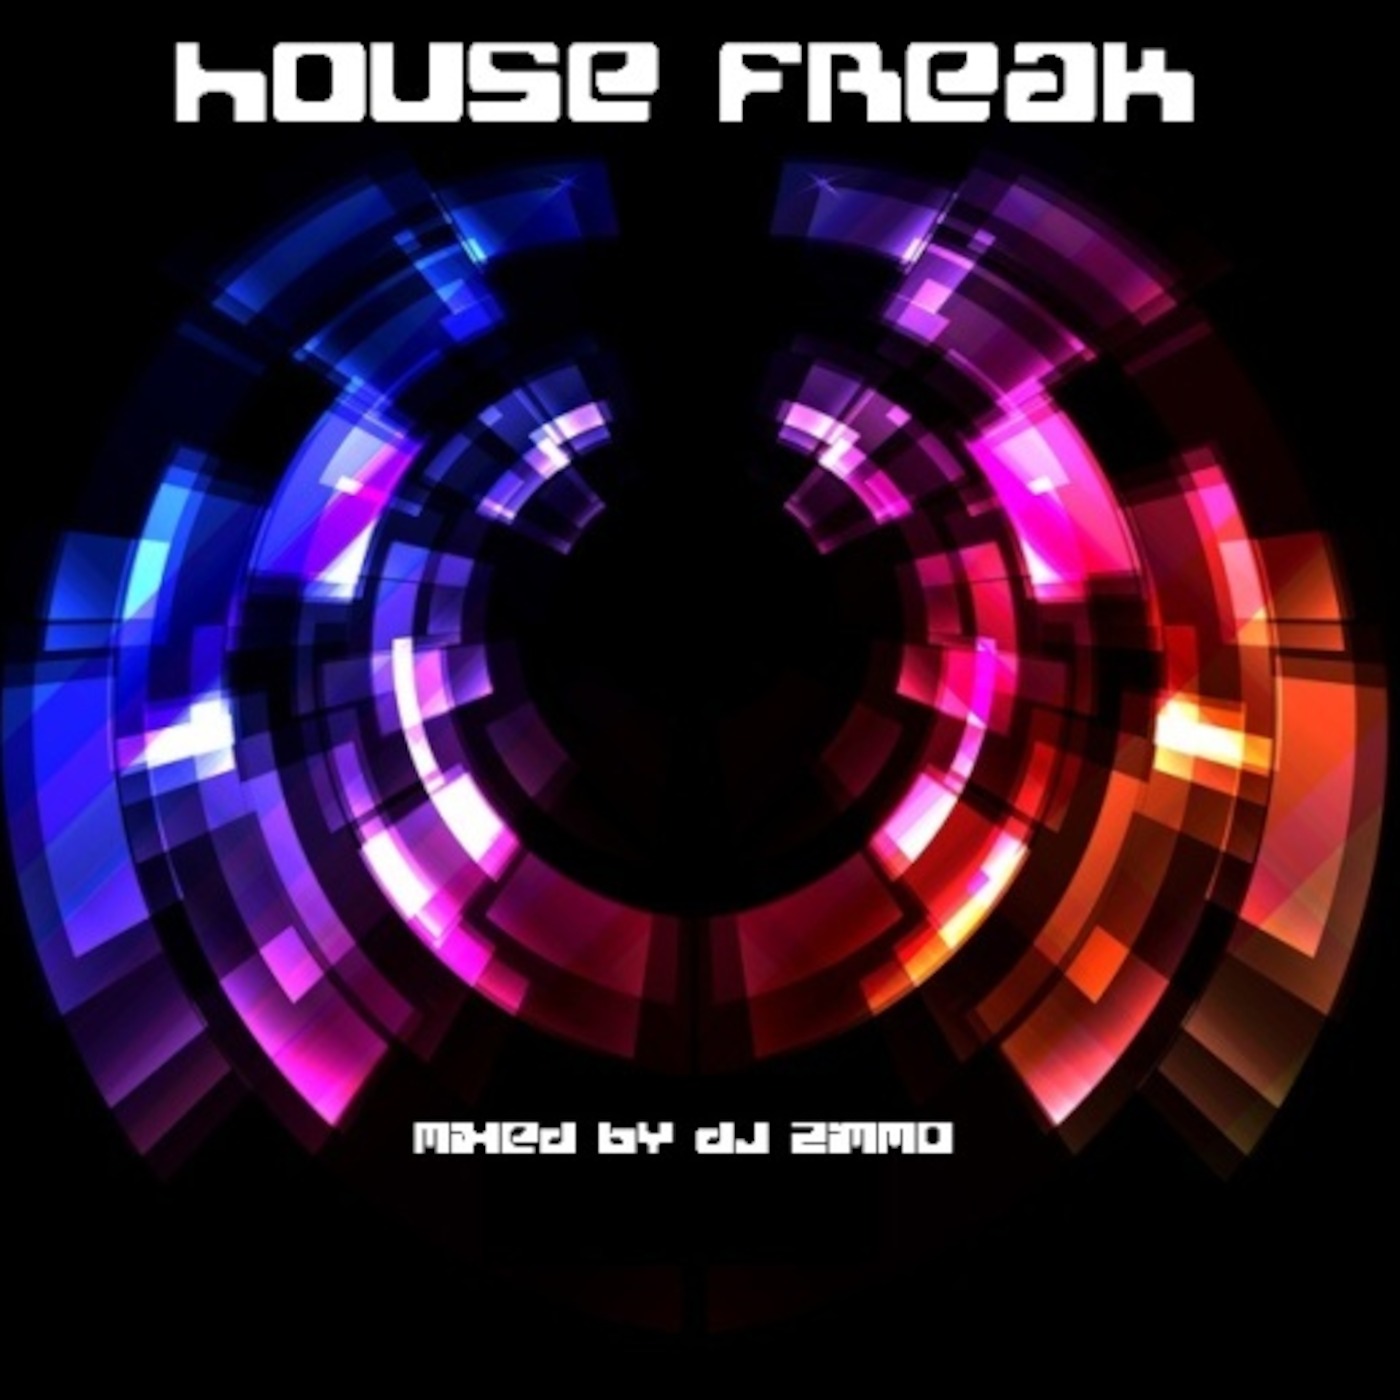 House Freak - September 2010